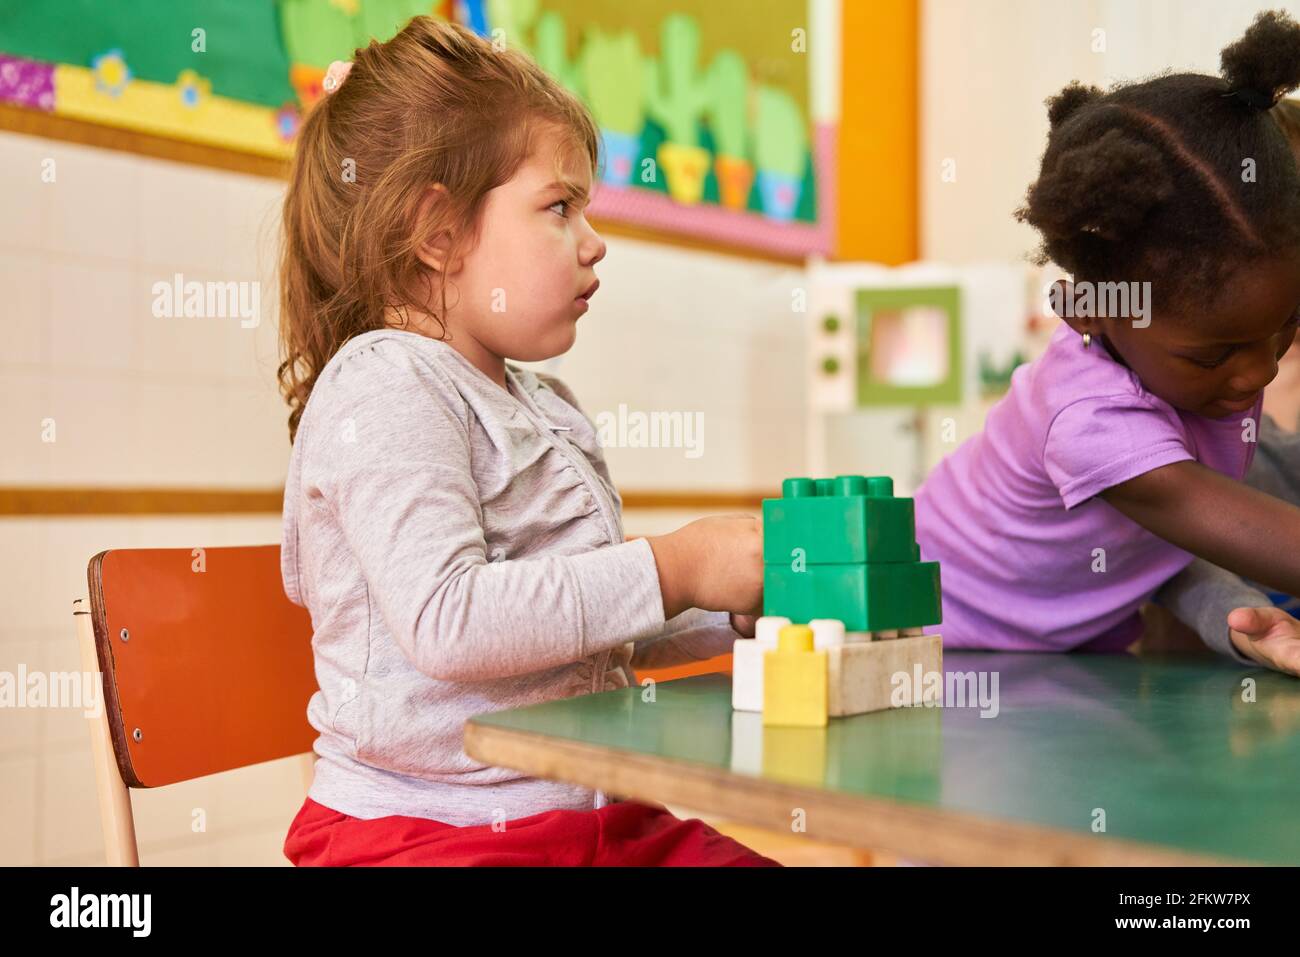 Les filles de la maternelle internationale ou de la maternelle joue avec des blocs de construction à la table Banque D'Images